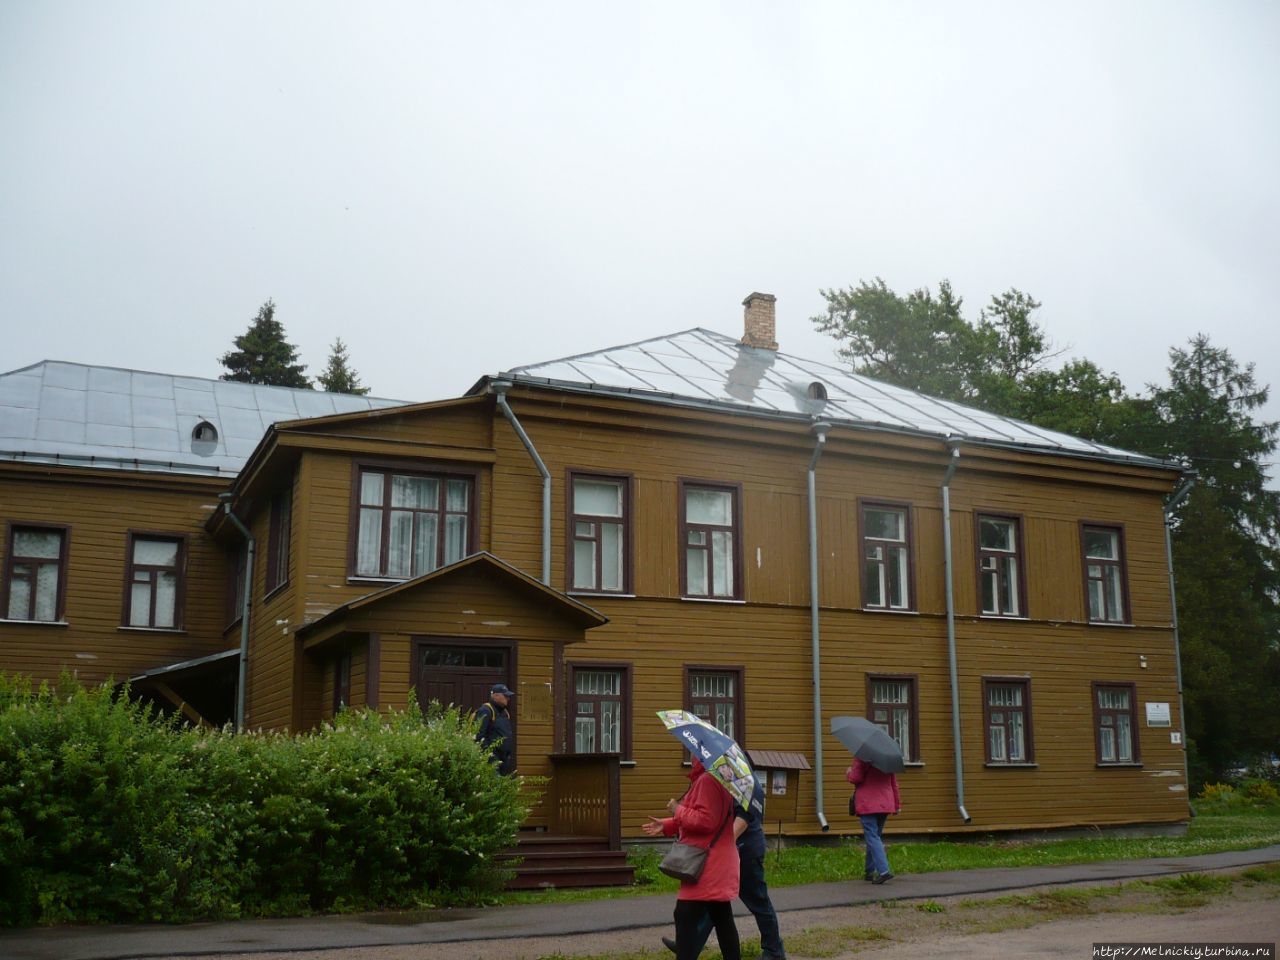 Олонецкий национальный музей карелов-ливвиков / Olonets National Museum of Karelian-Livviks